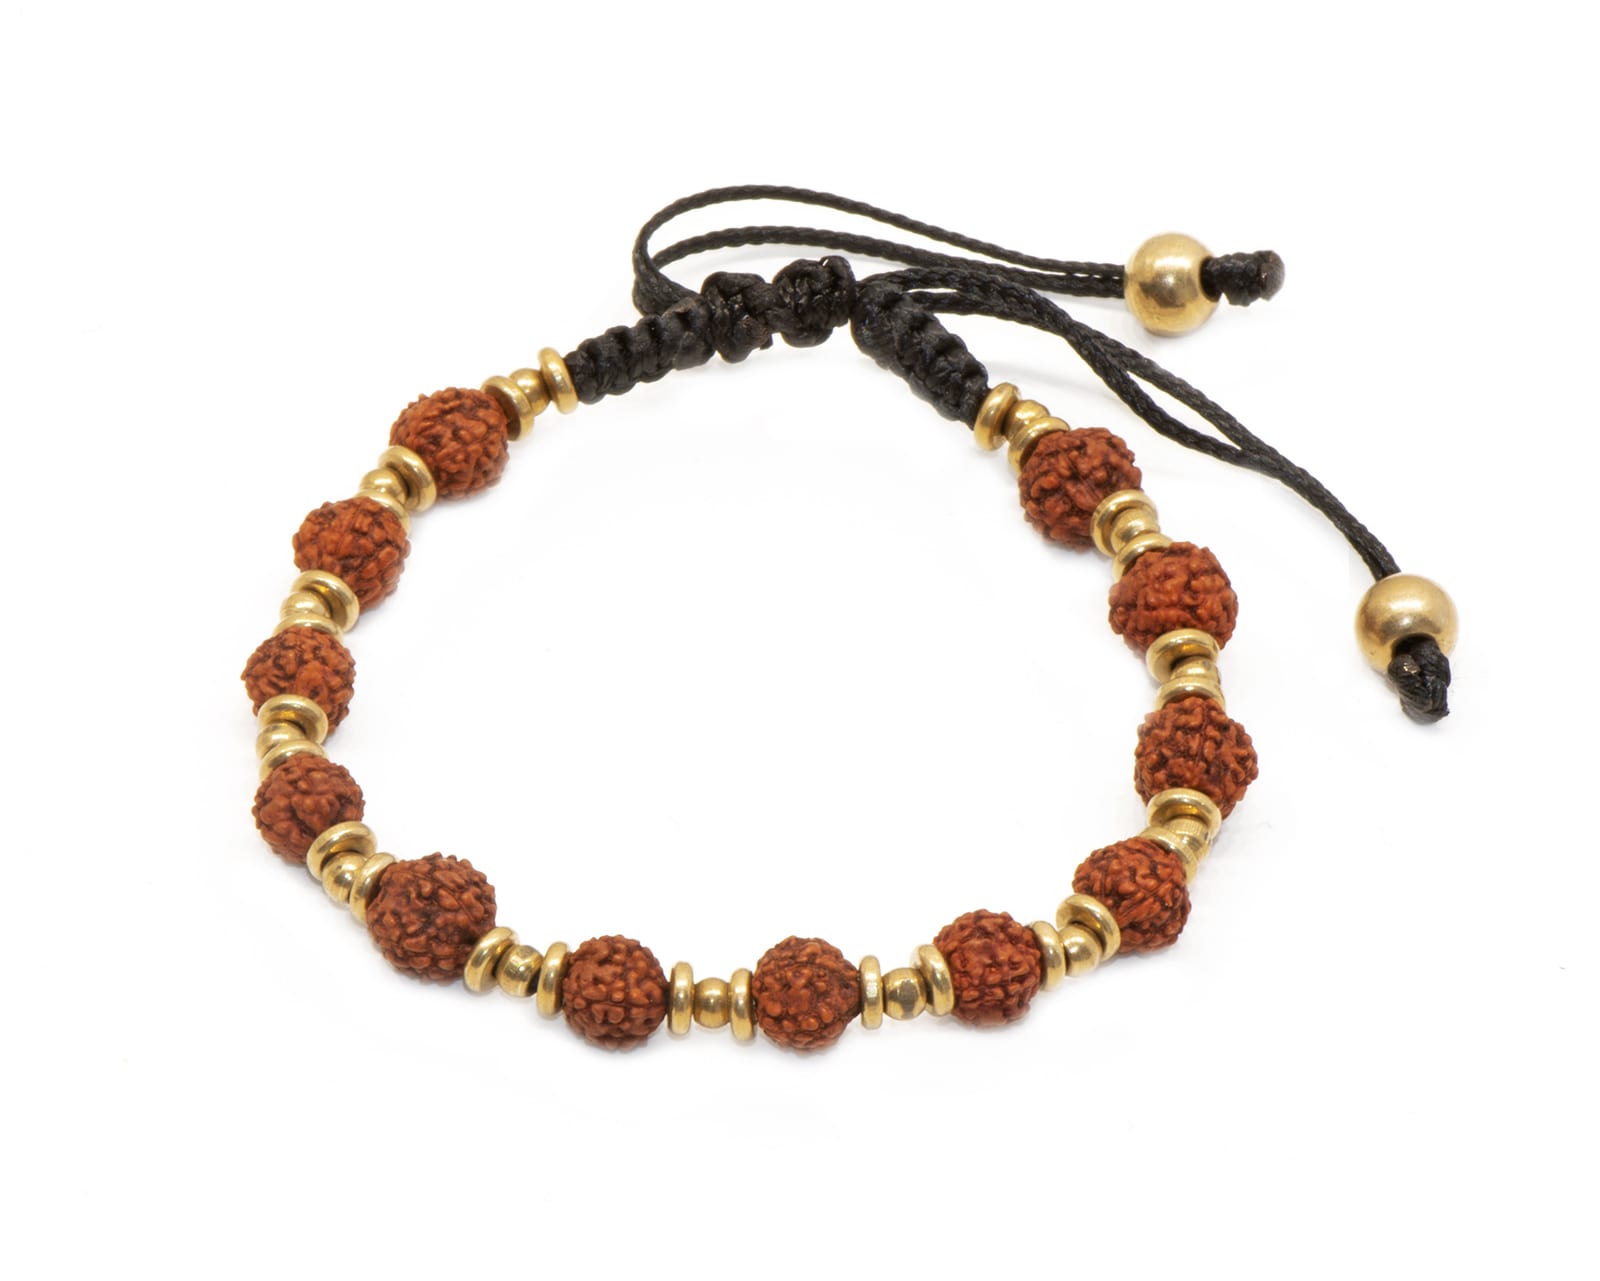 Bracelet Mala marron en graines de rudrashka de la marque Nataraj